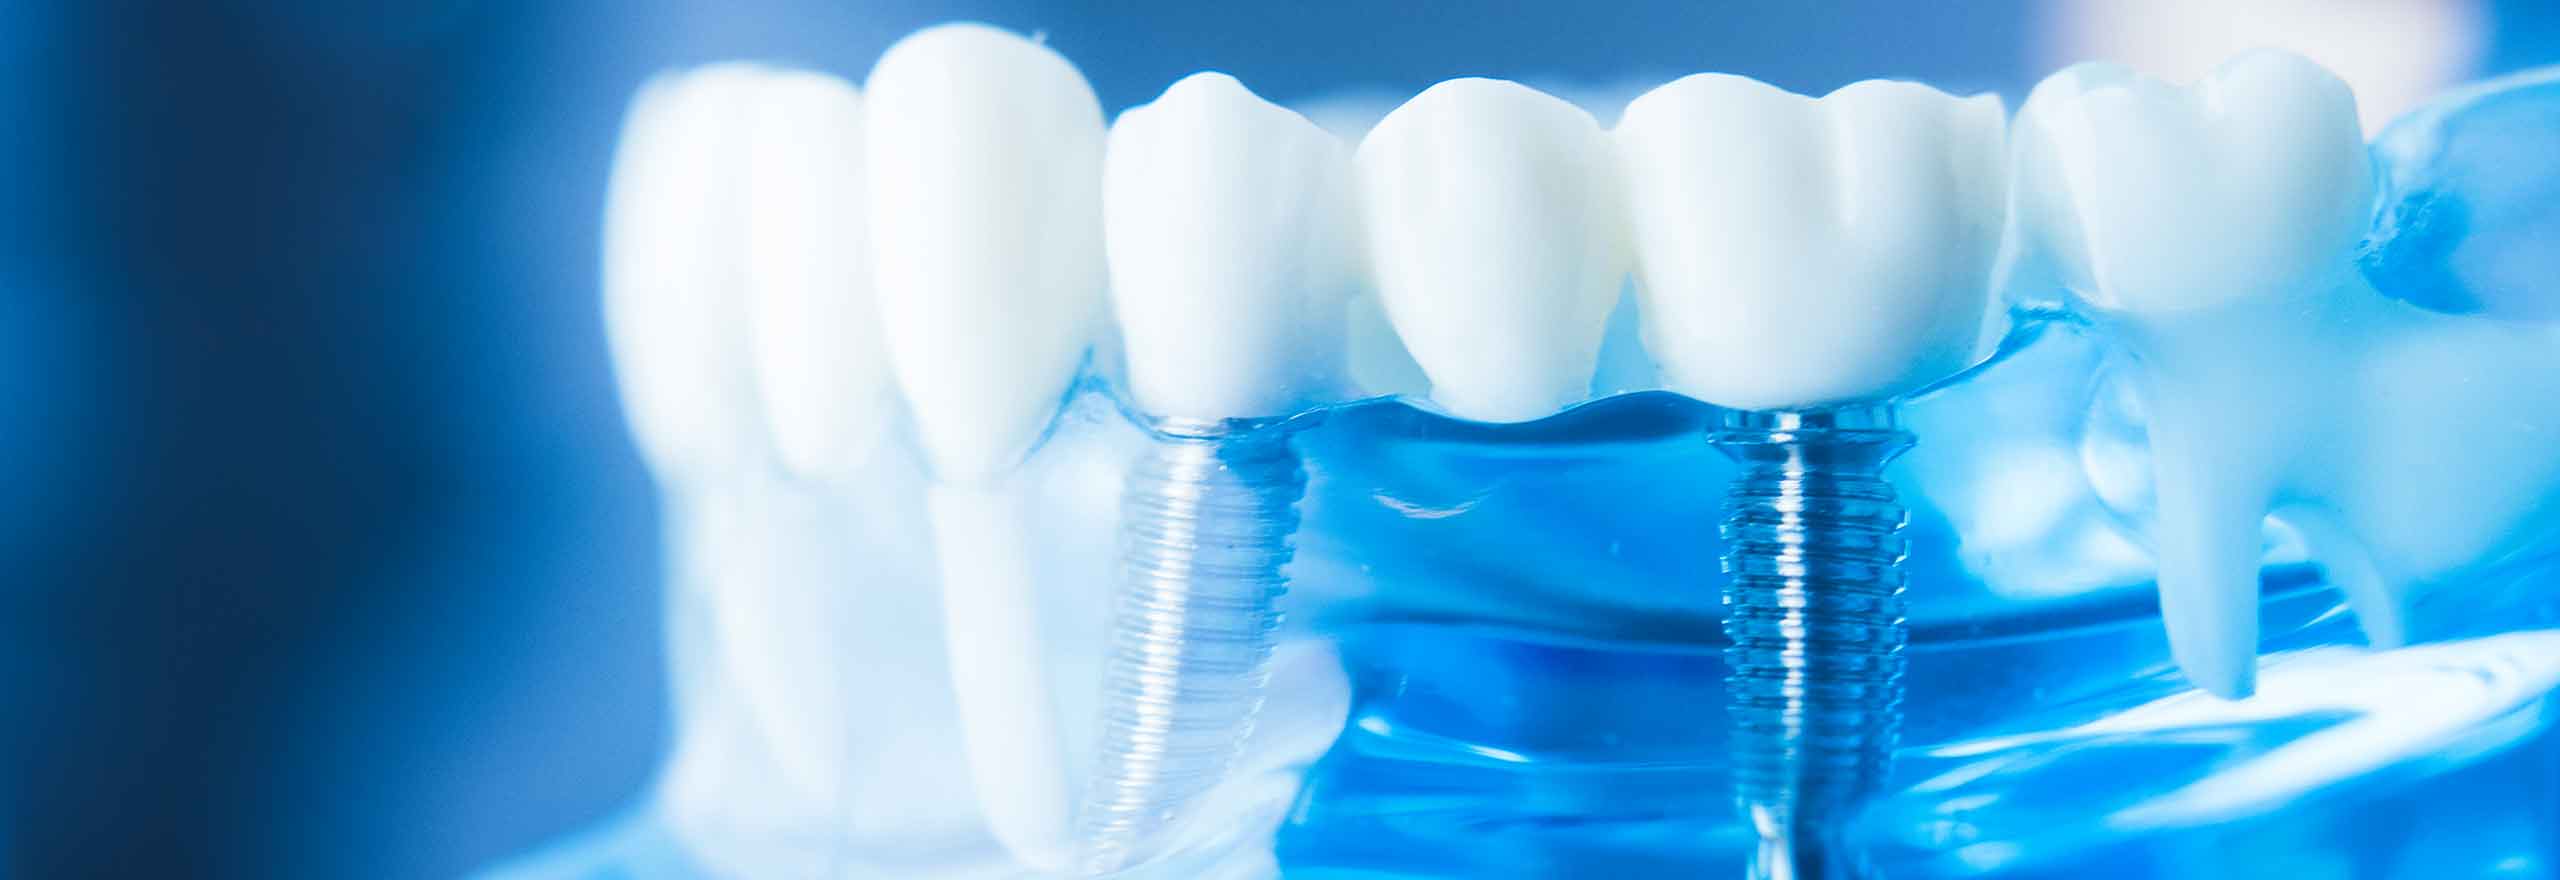 Impianti dentali in un modello didattico per l'odontoiatria  